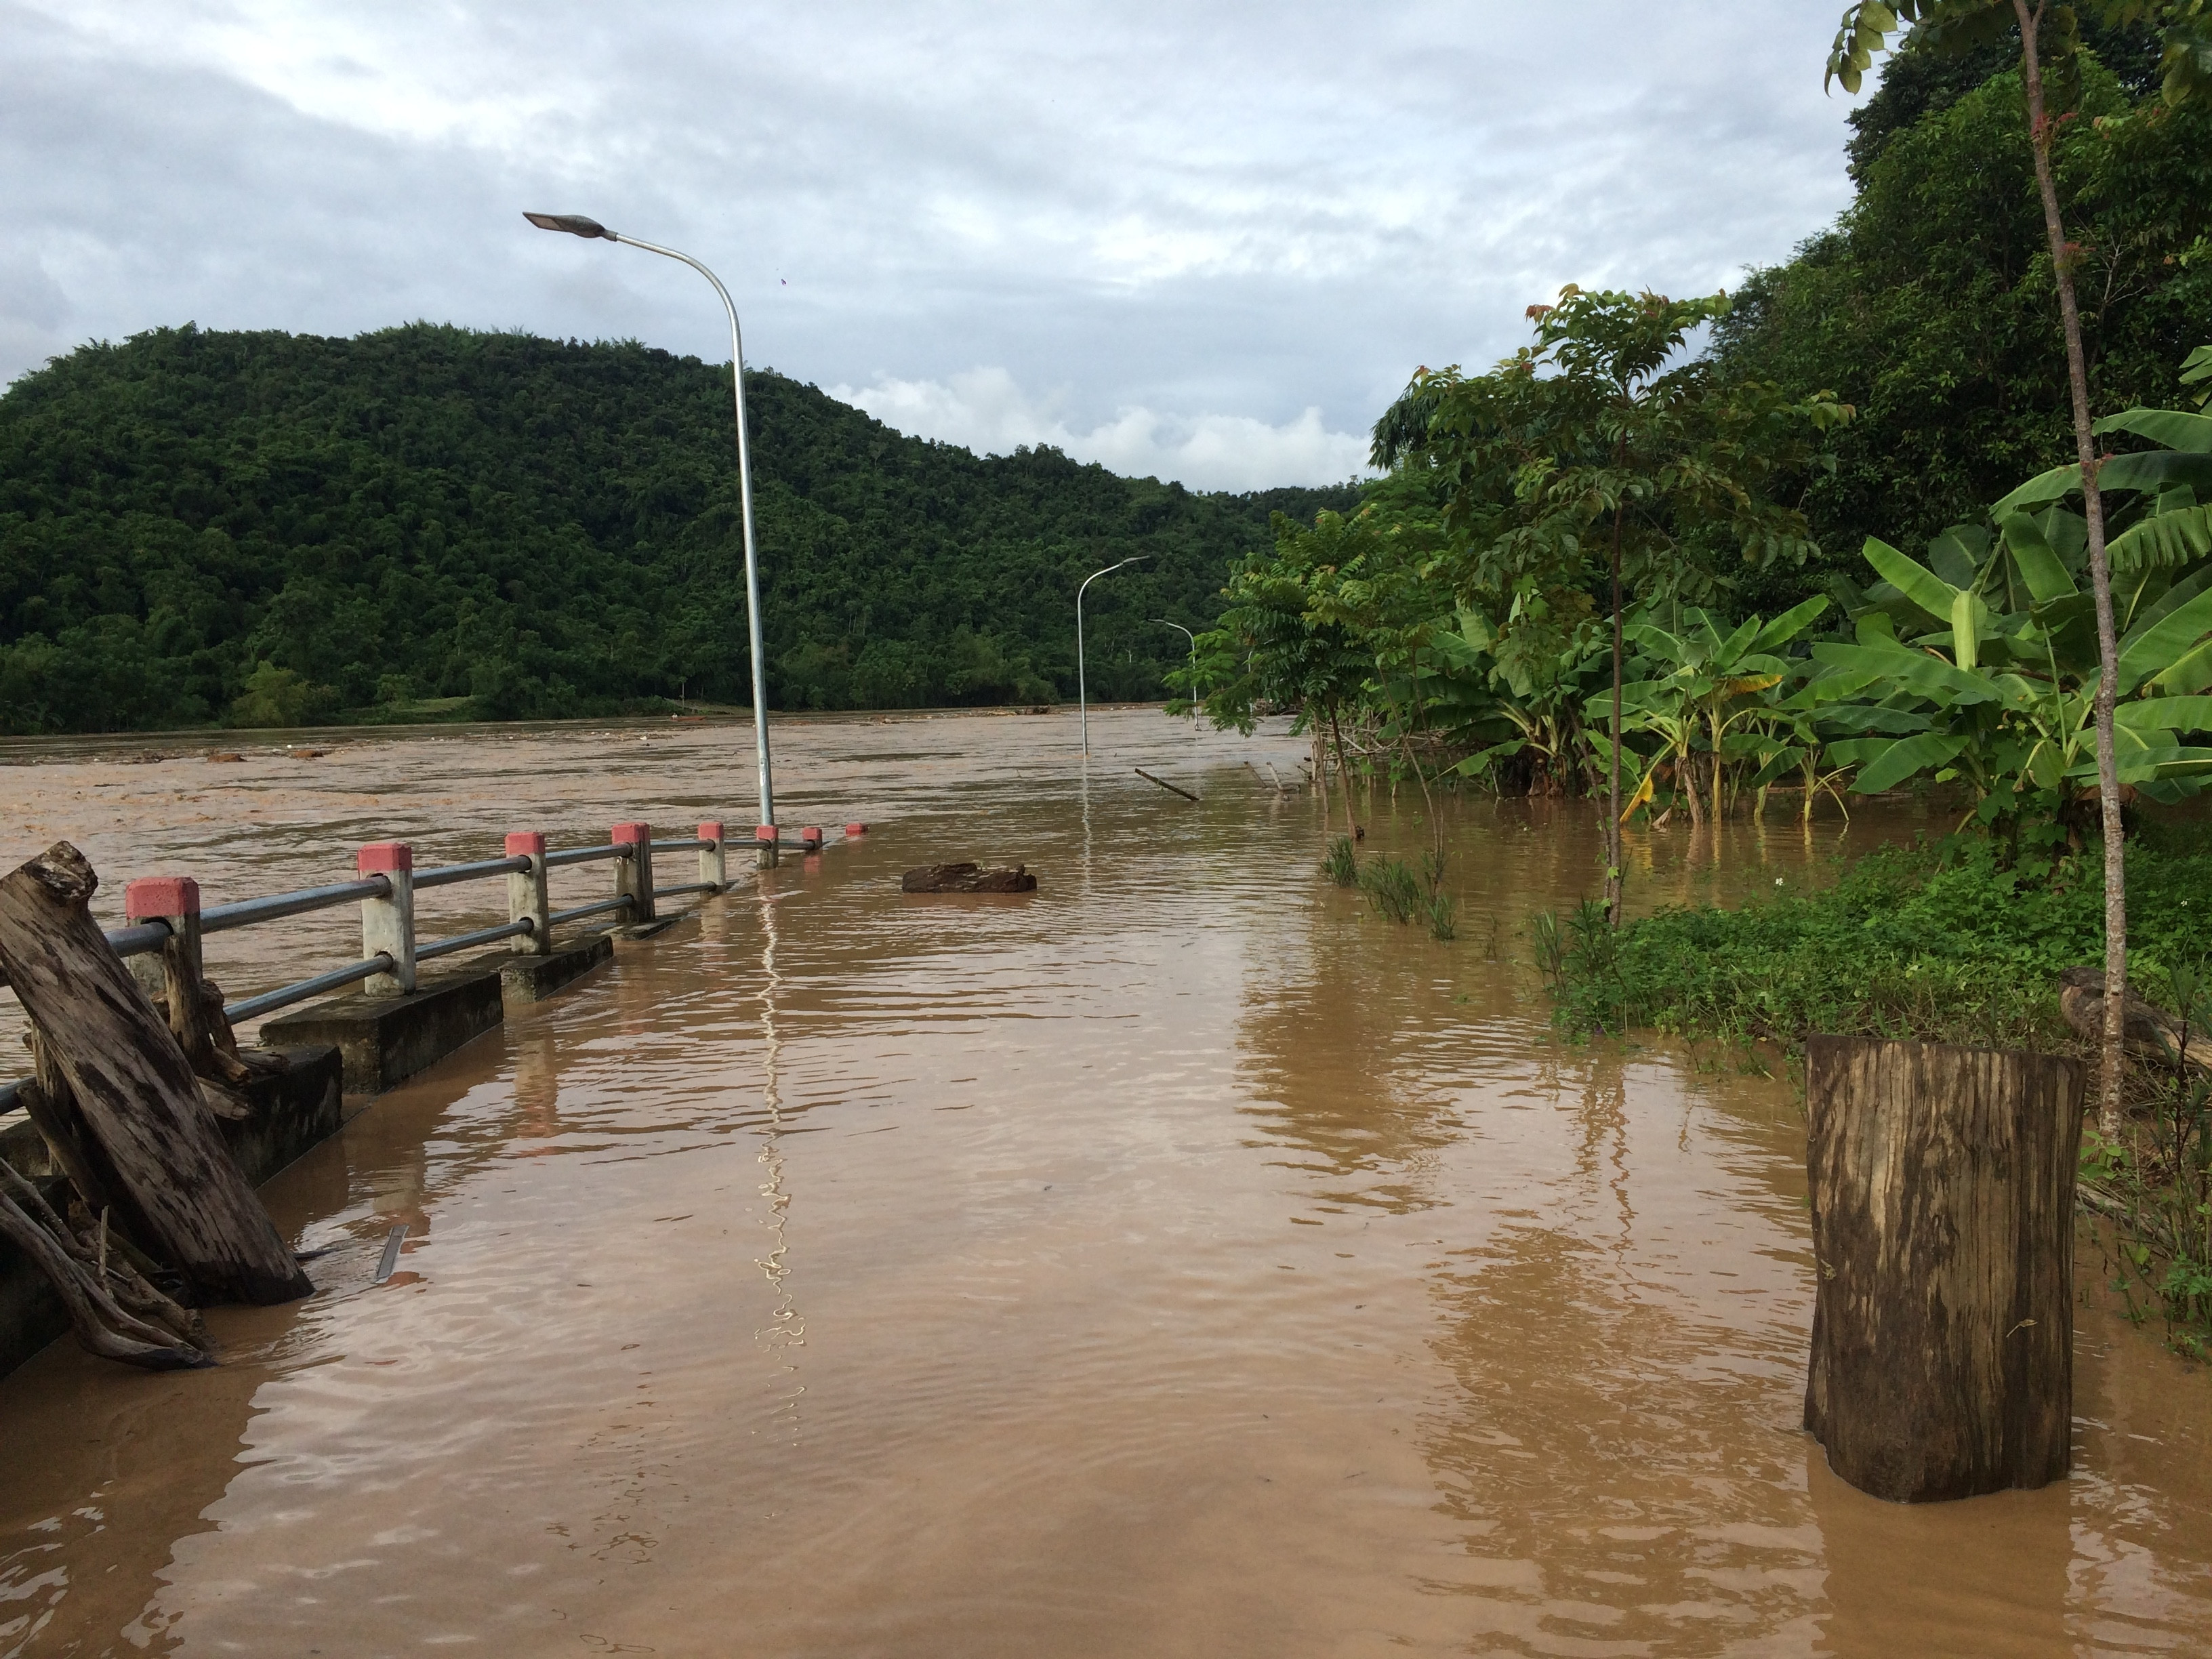 Đường bờ kè sông Lam bị ngập chìm trong nước lũ. Ảnh: Hà Anh